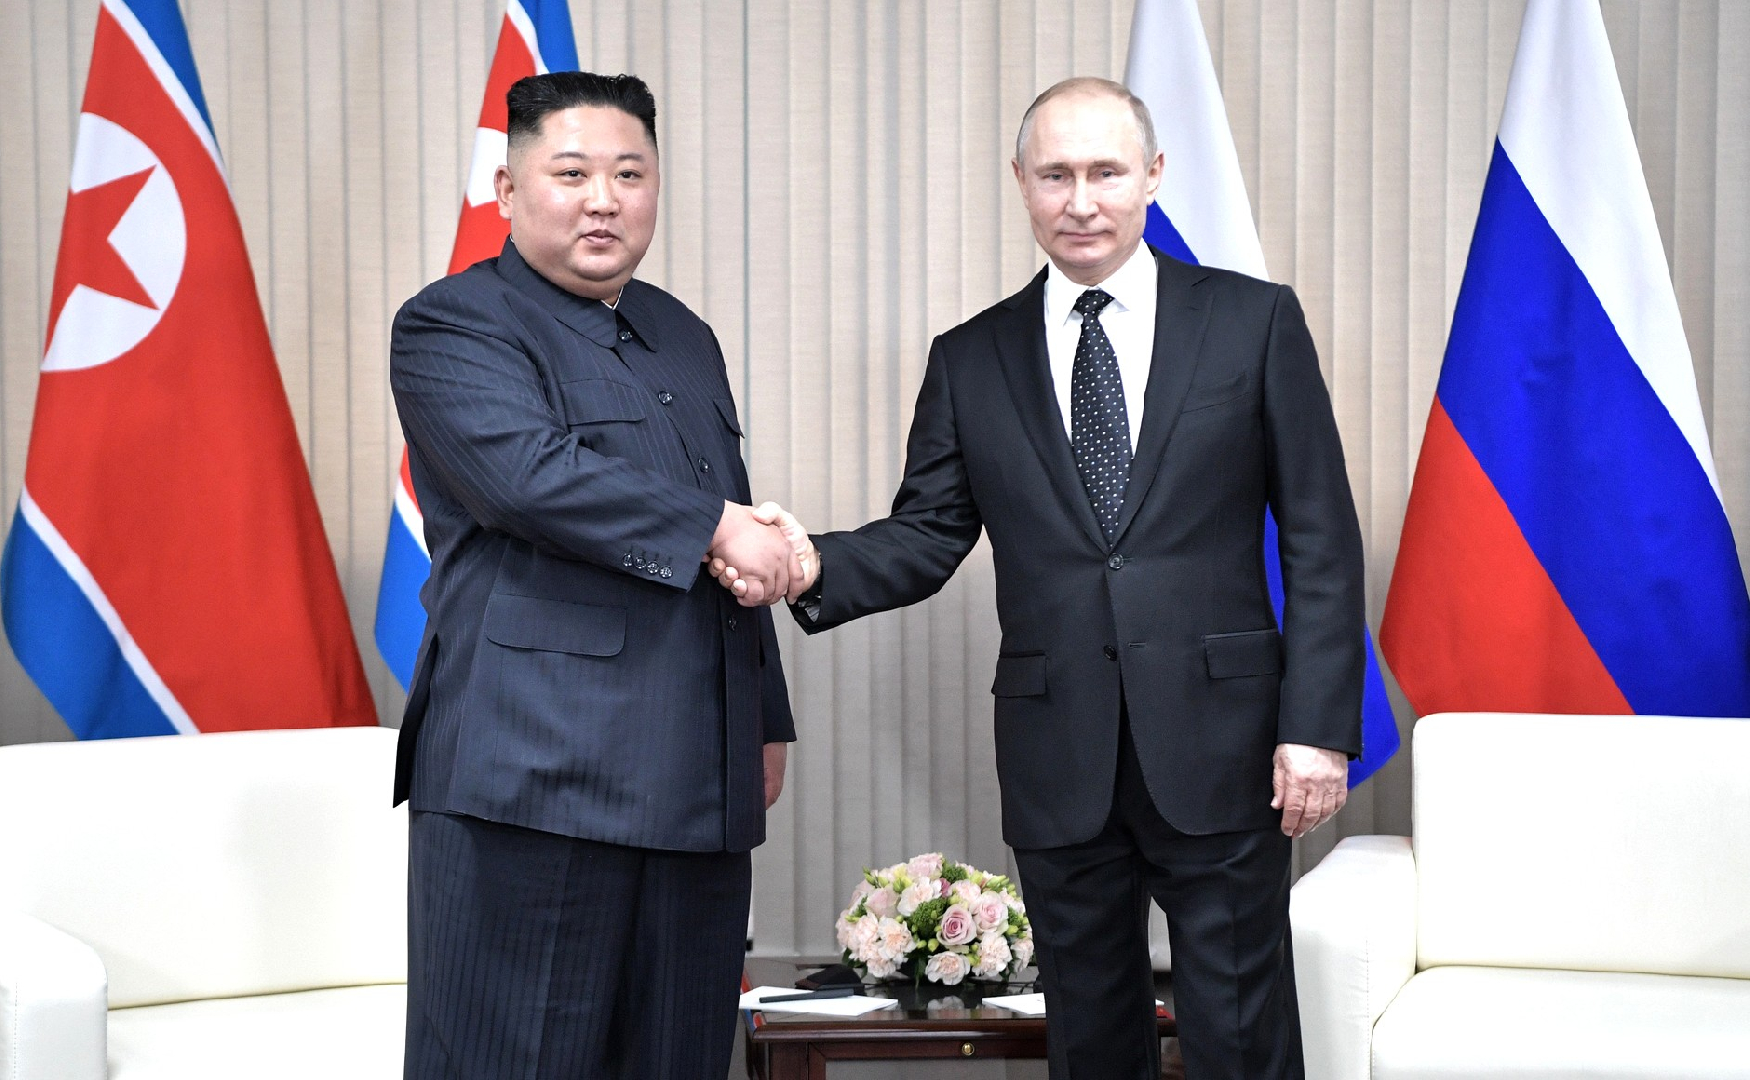 В Пхеньяне Путин и Ким Чен Ын начали переговоры в составе своих делегаций |  Радио 1